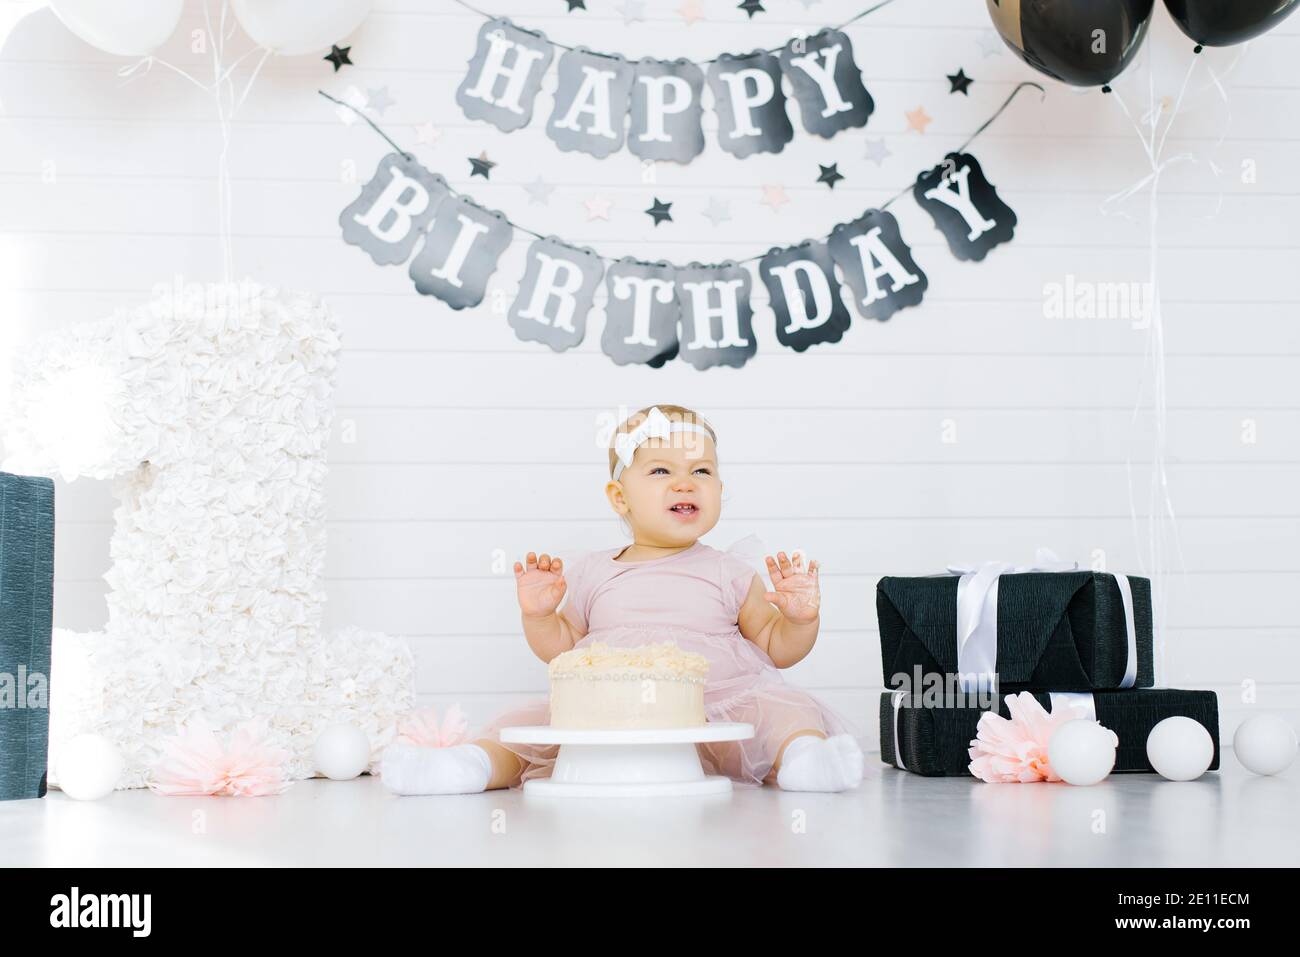 Célébration du premier anniversaire d'une petite fille. Un enfant s'assoit près d'un gâteau dans une zone de photo festive Banque D'Images